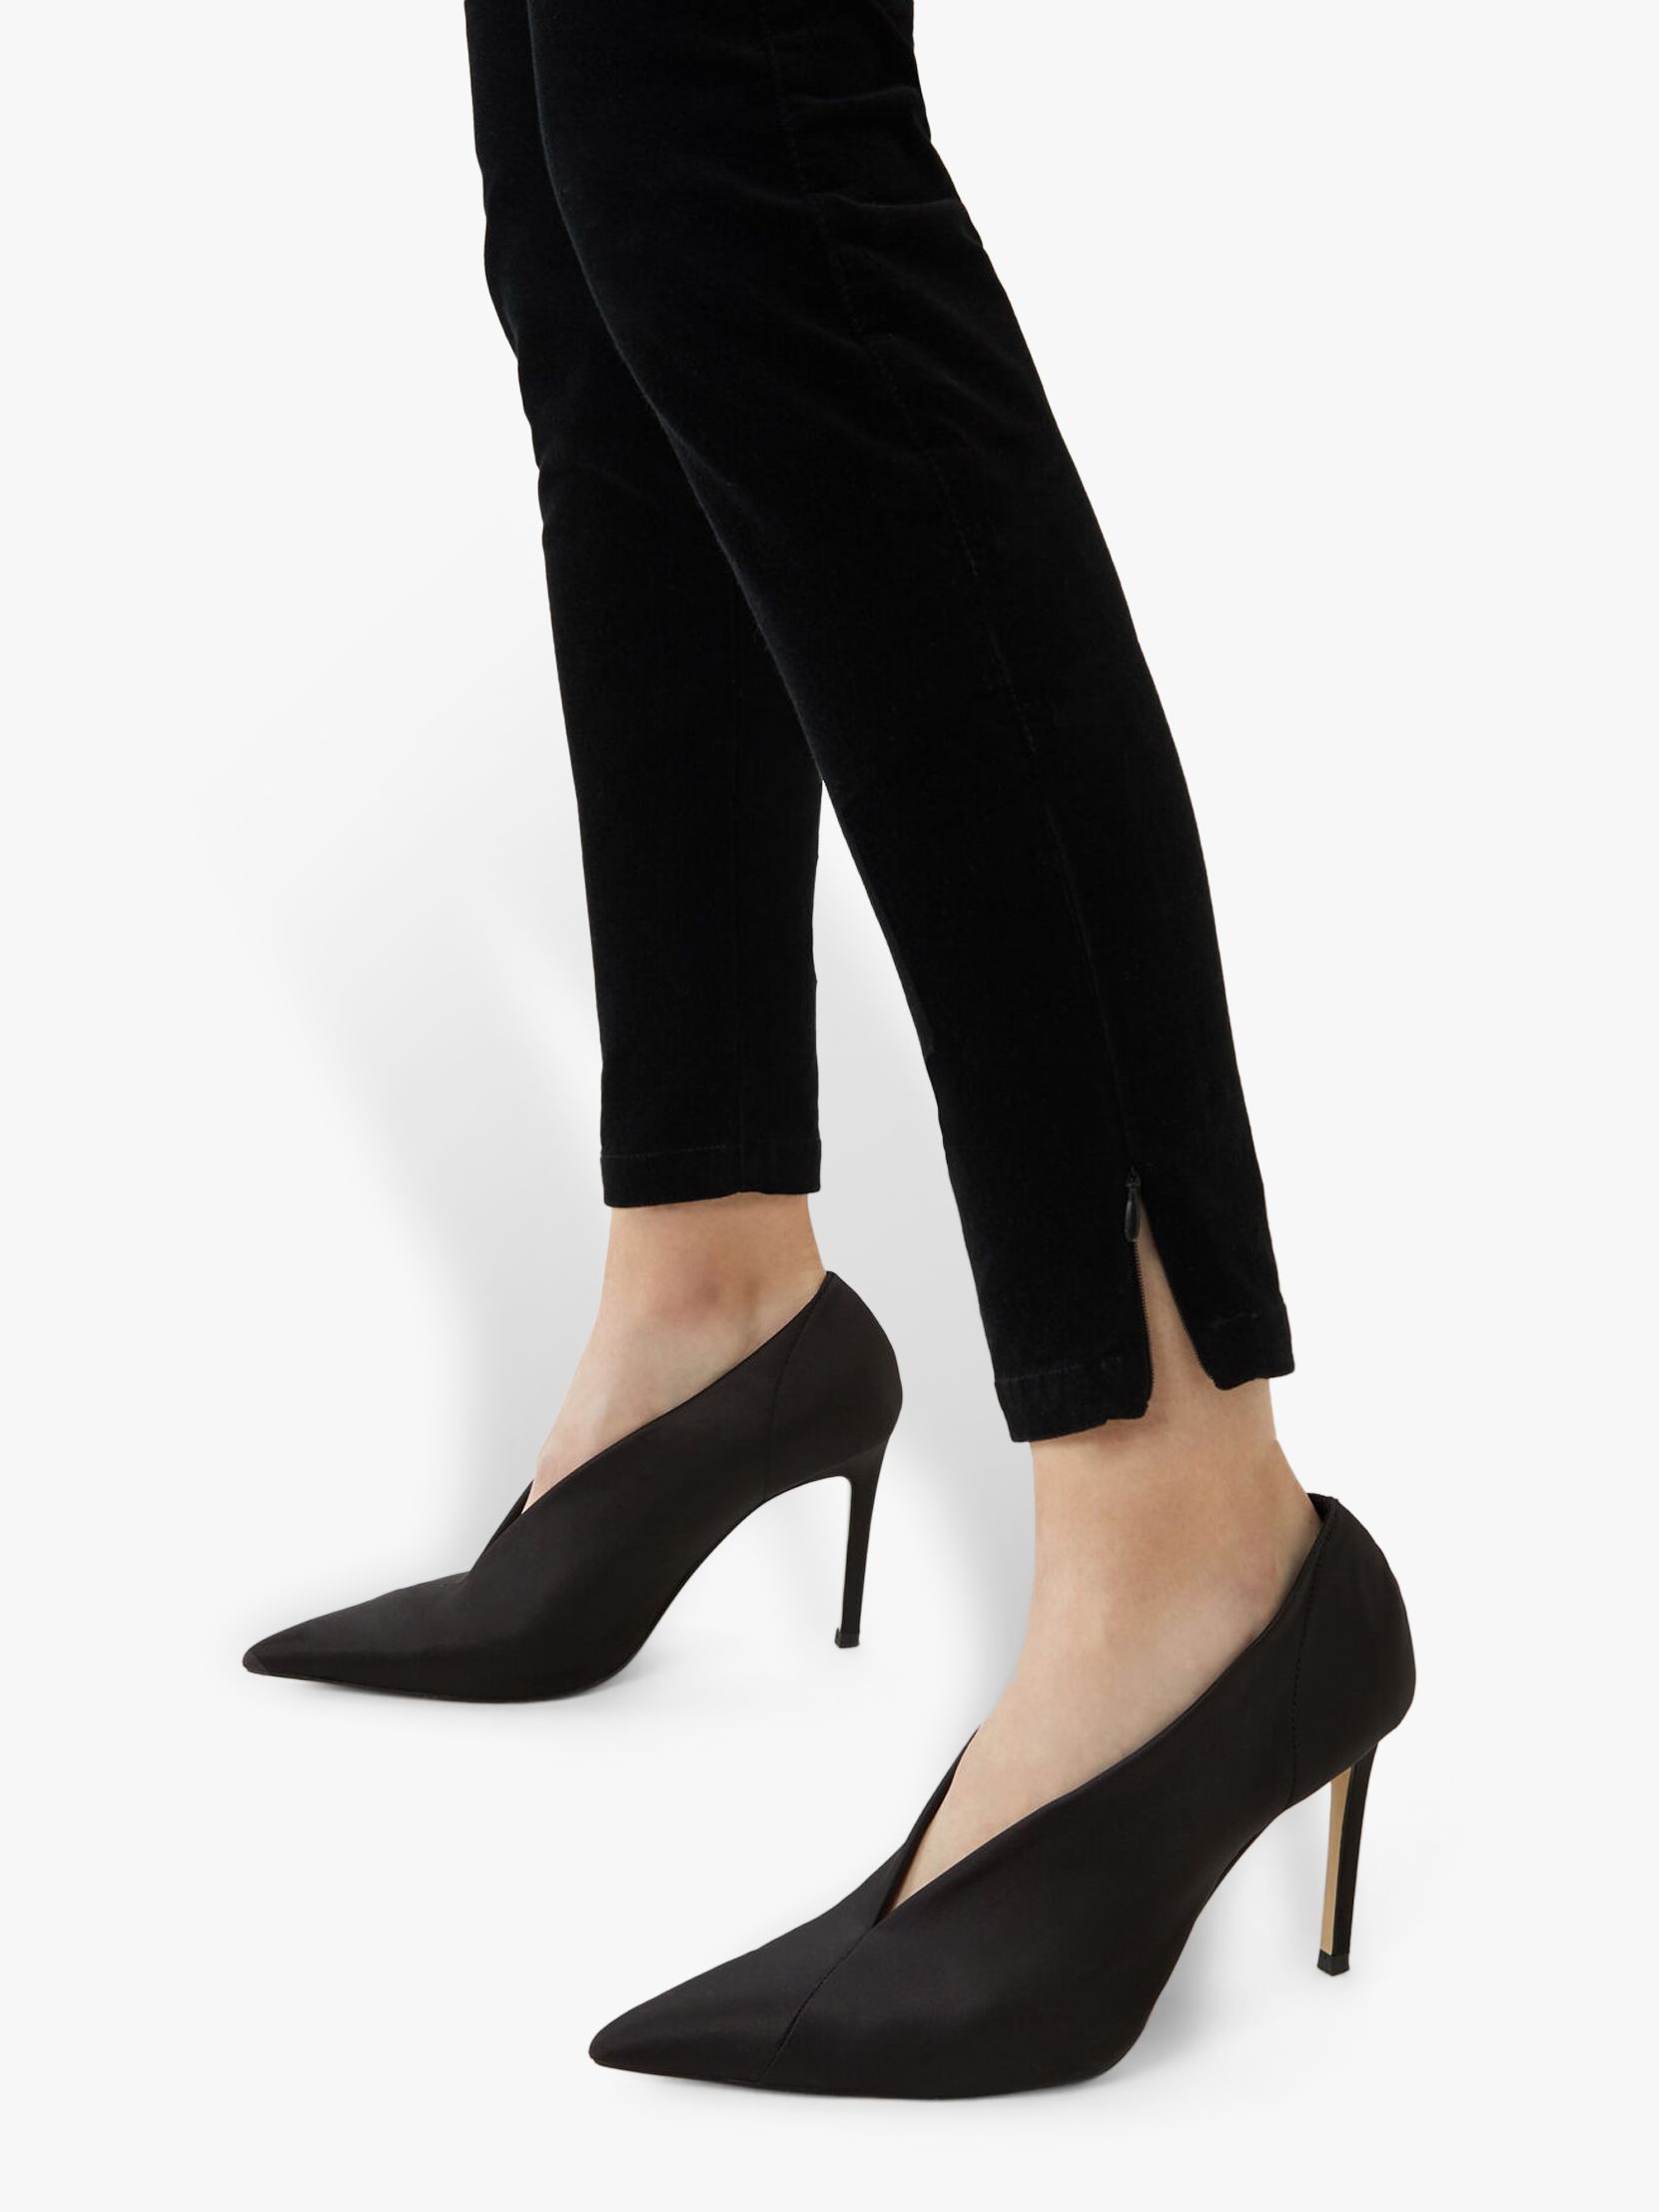 black velvet slim leg trousers